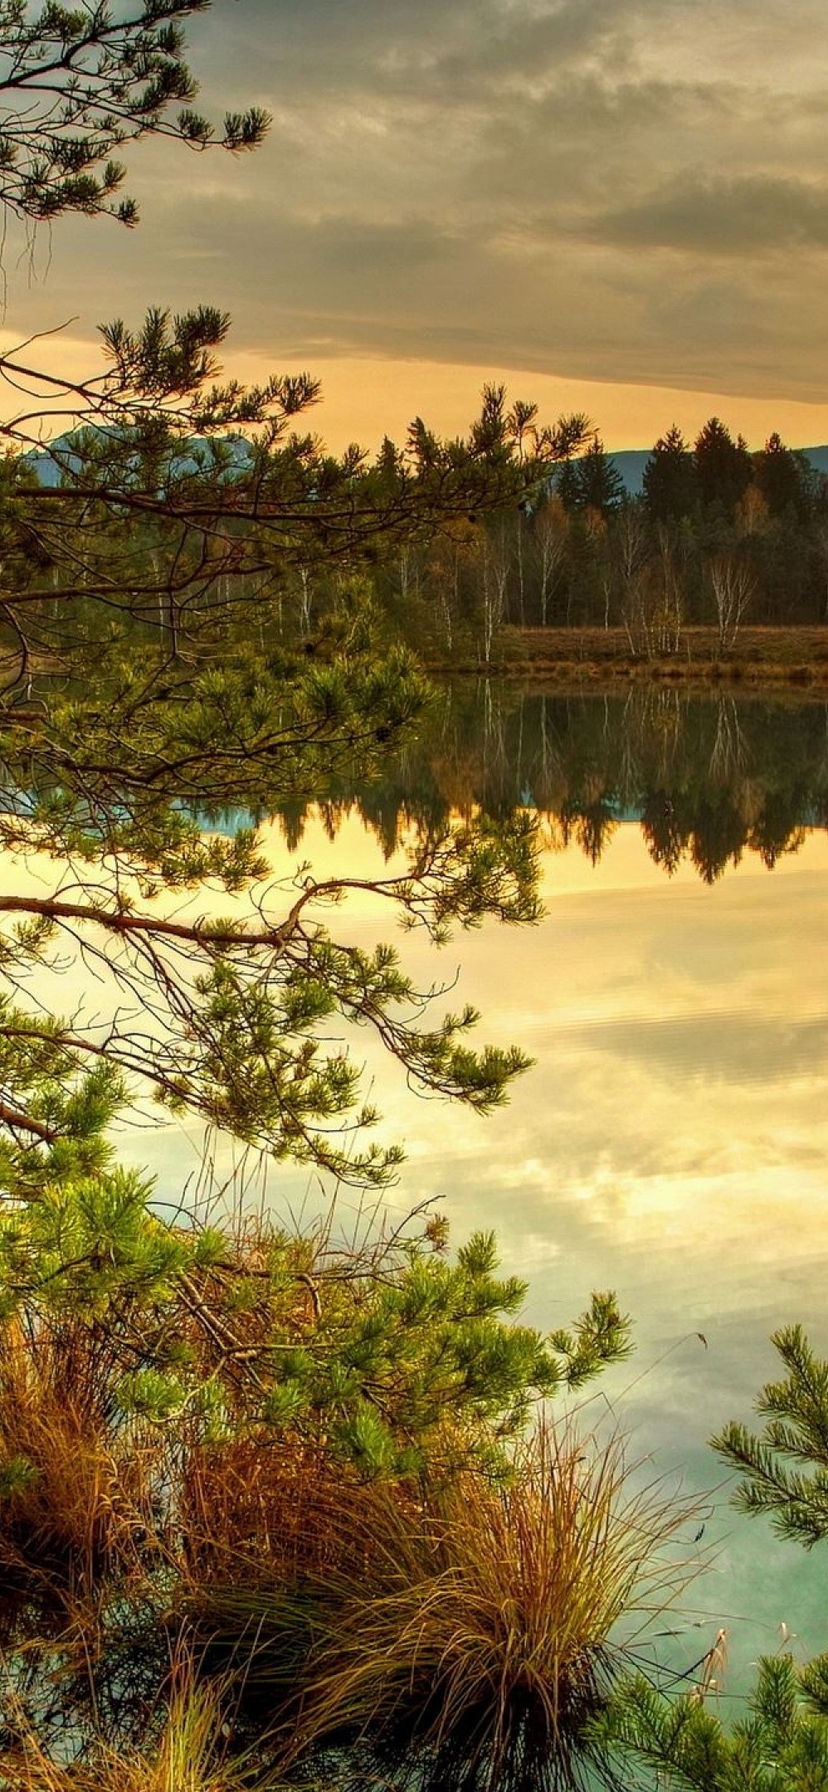 Image: Forest, trees, needles, lake, sky, sunset, reflection, autumn